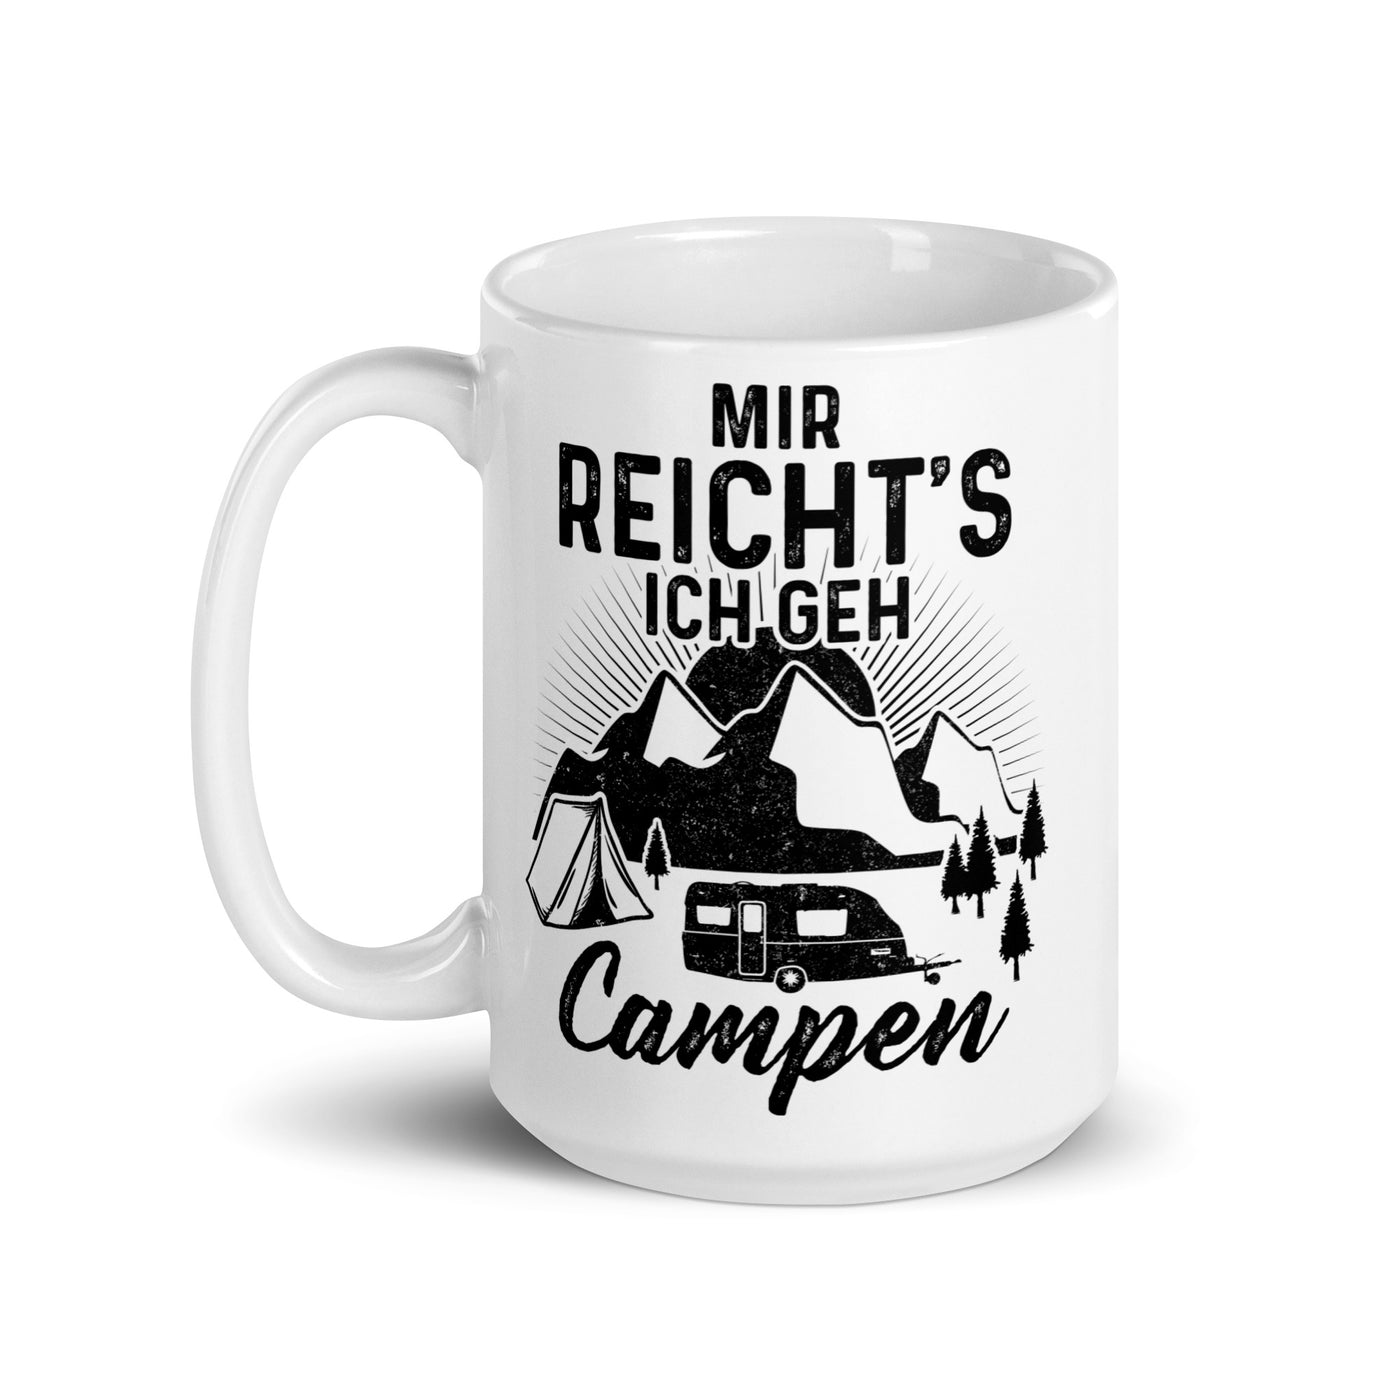 Mir Reichts Ich Geh Campen - Tasse camping